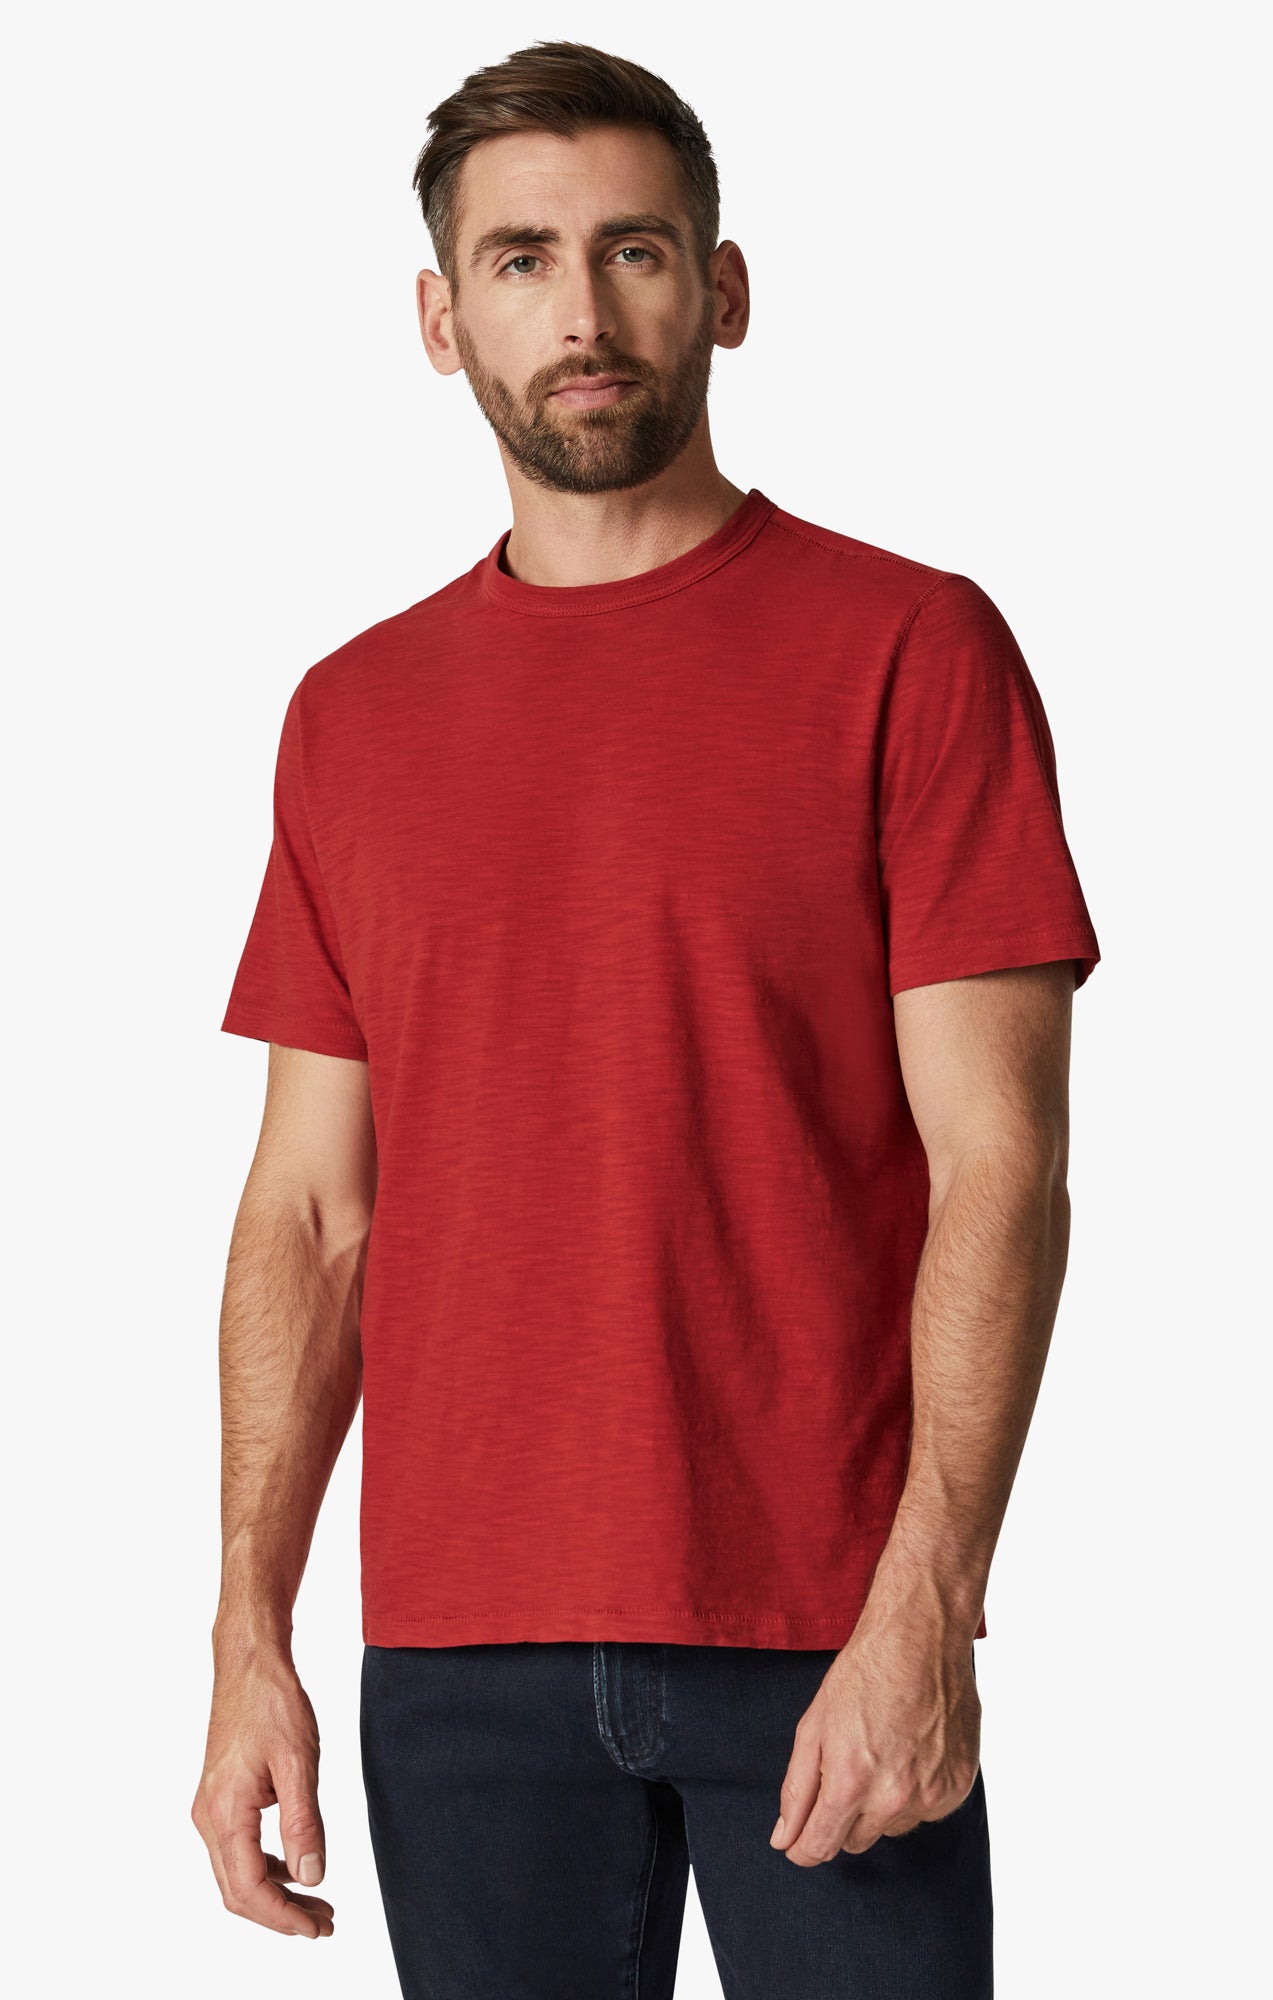 Slub Crew Neck T-Shirt in Red Image 1